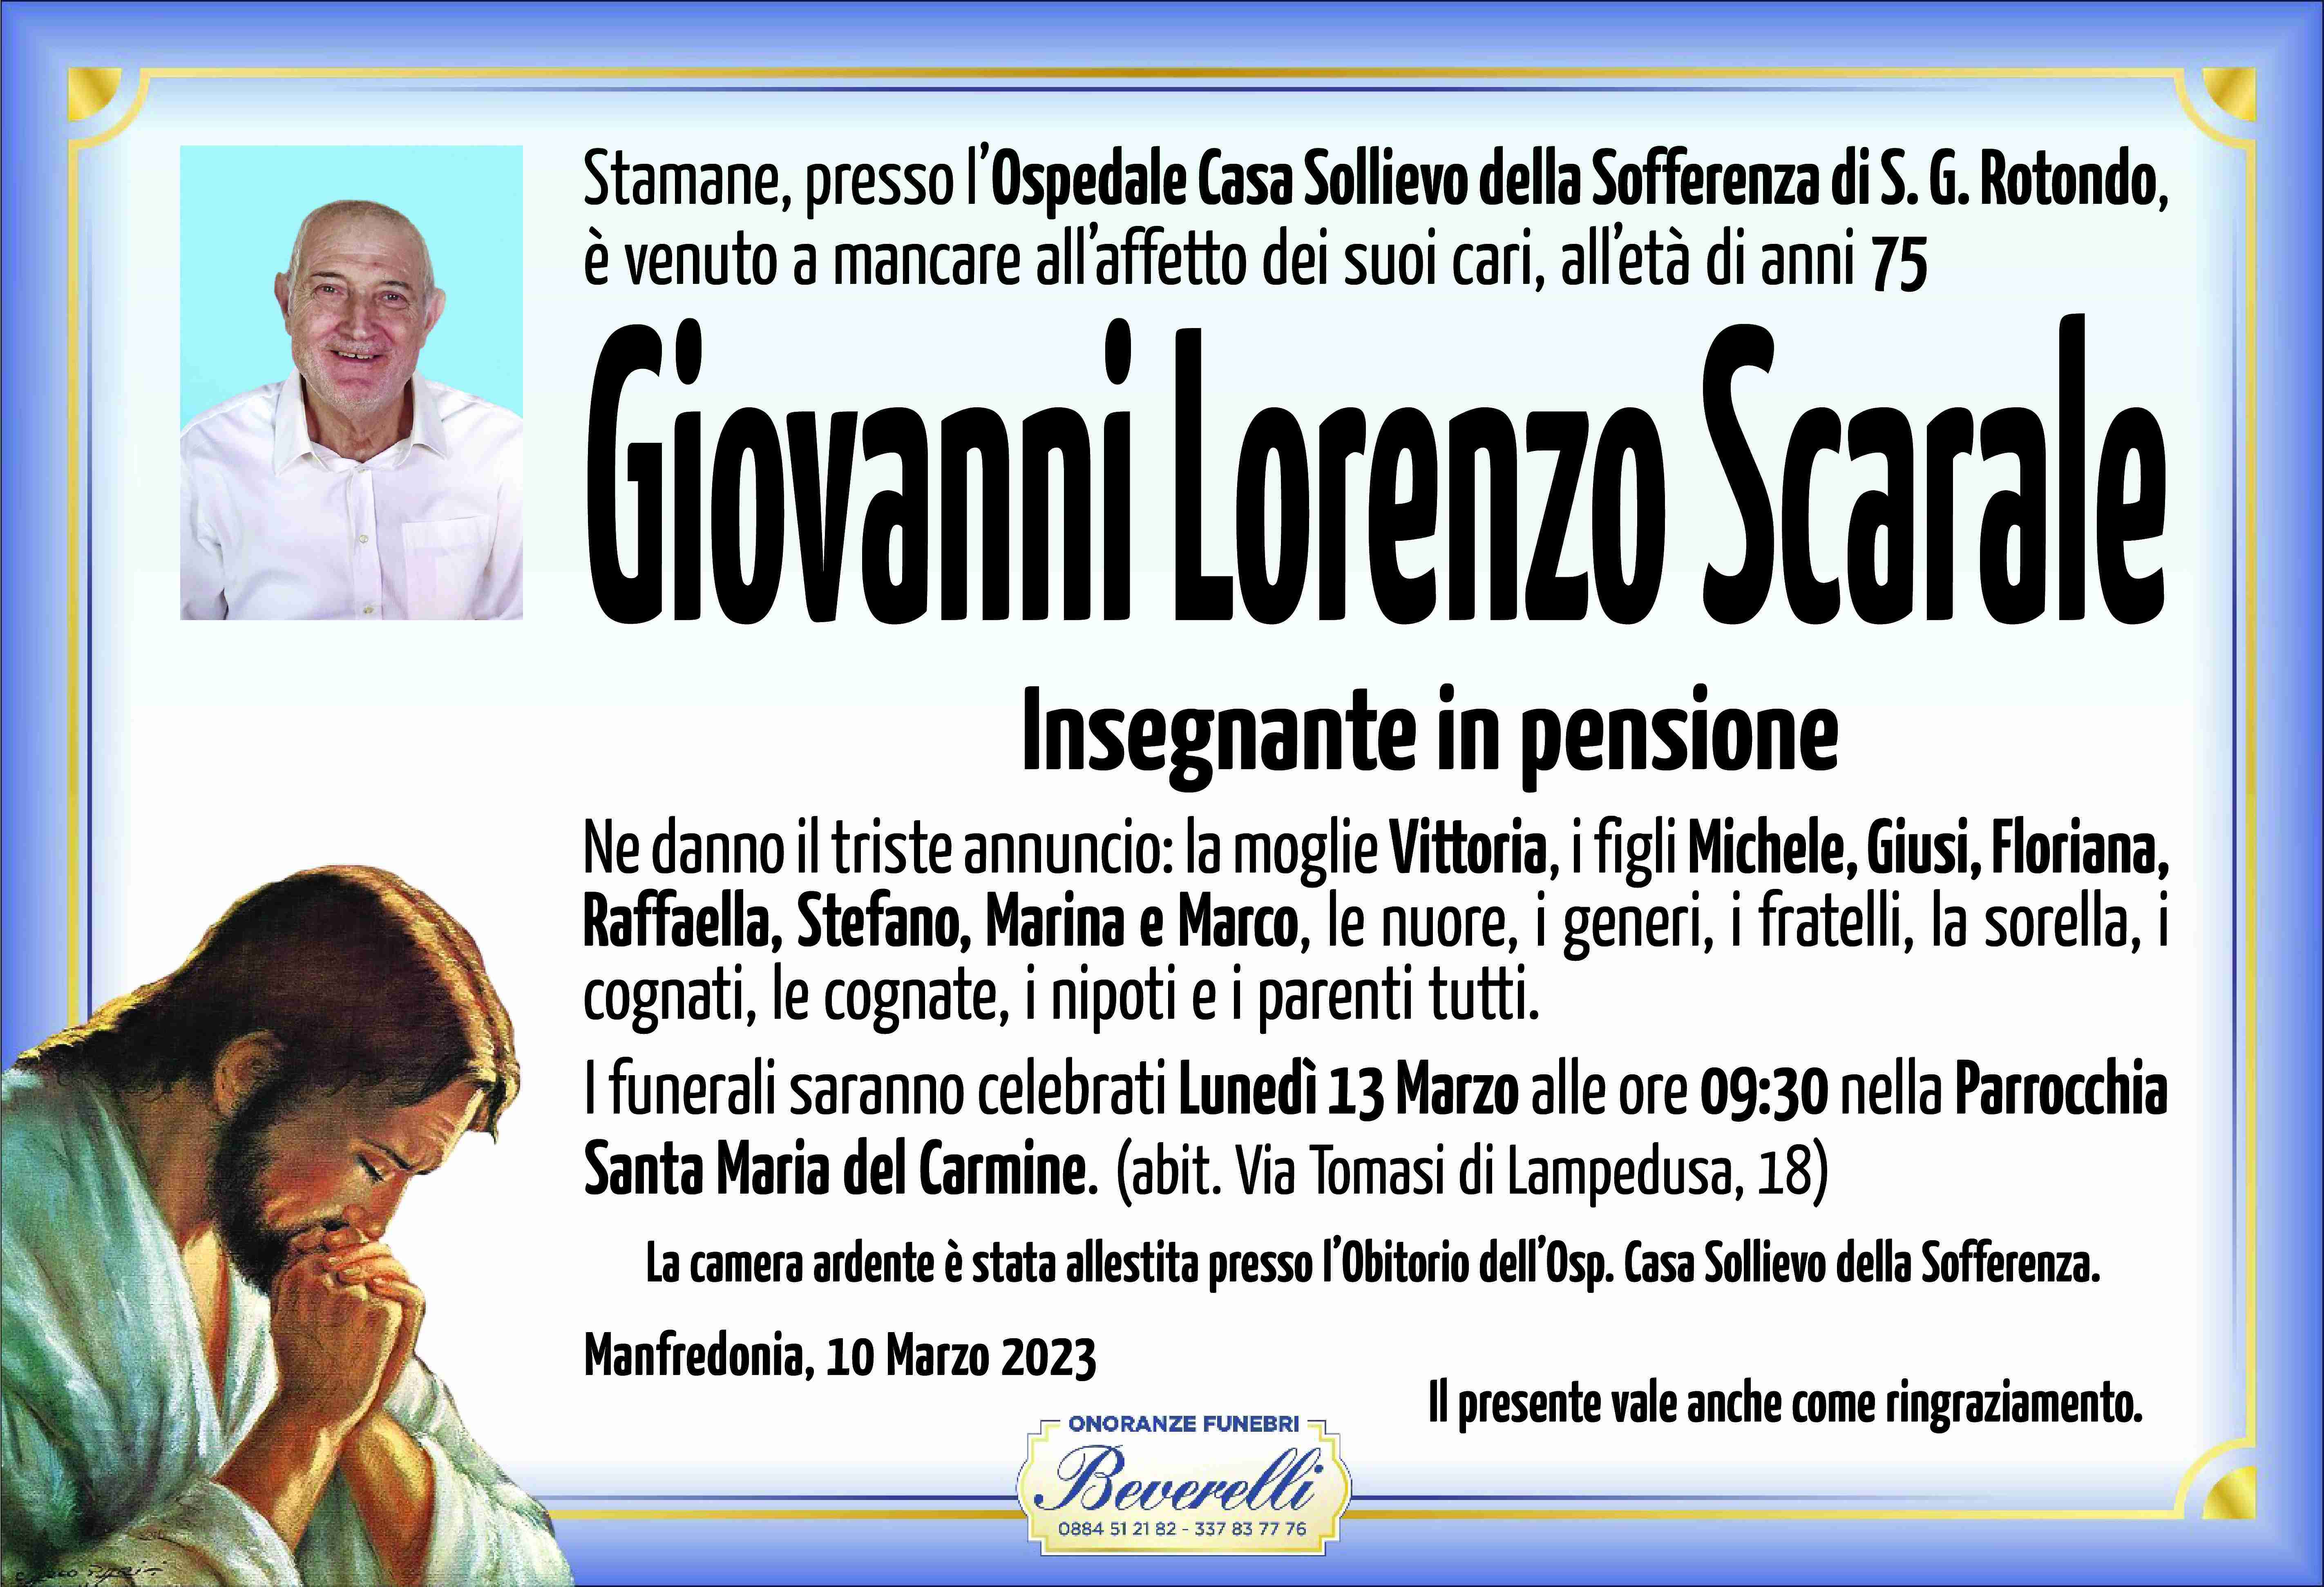 Scarale Giovanni Lorenzo